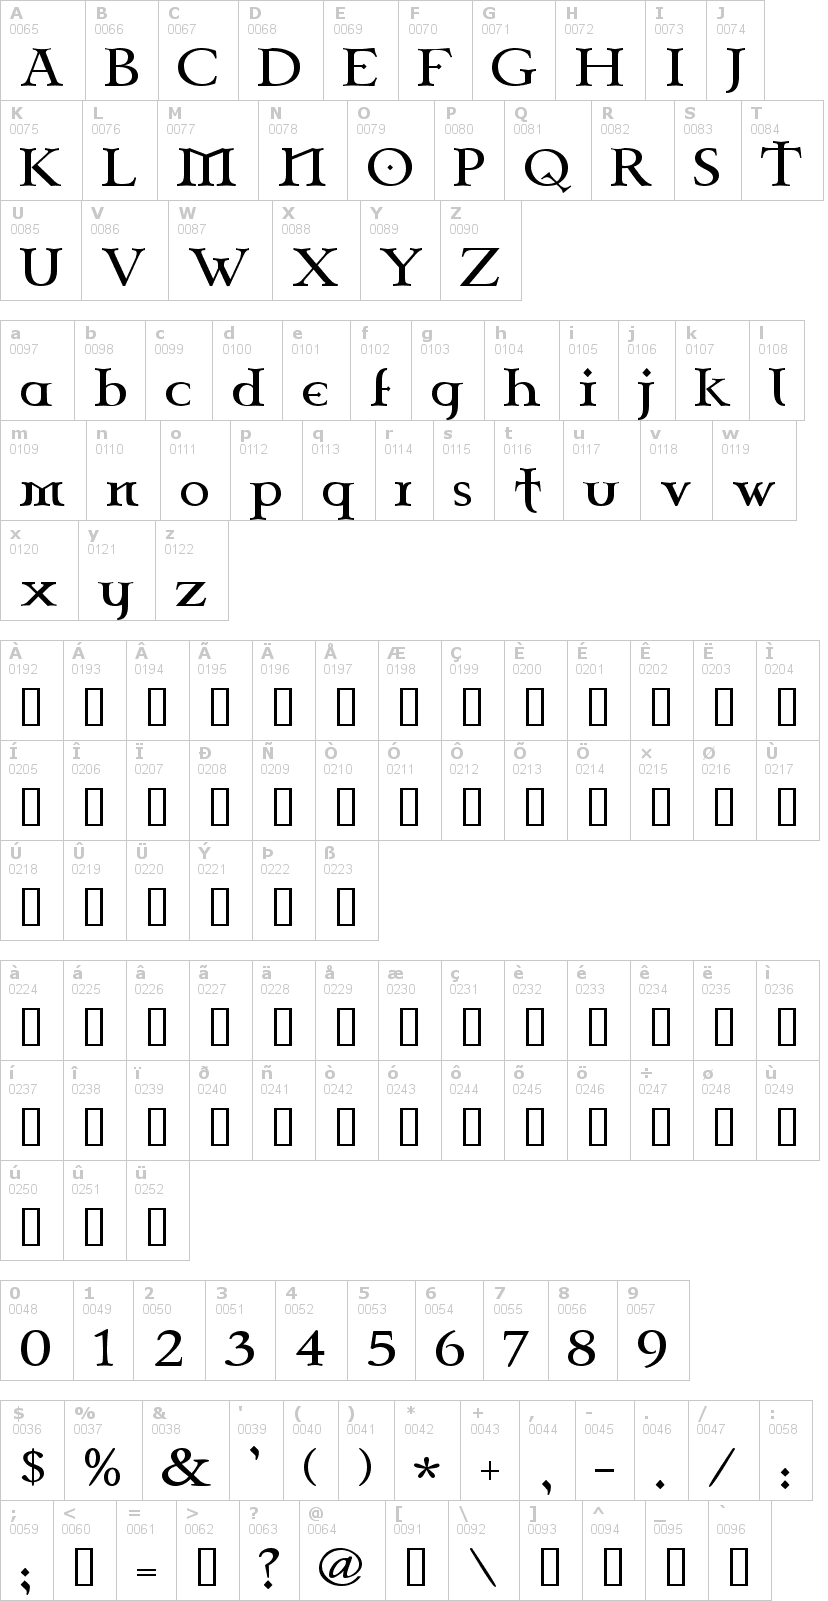 Lettere dell'alfabeto del font celtic-garamond-2nd con le quali è possibile realizzare adesivi prespaziati